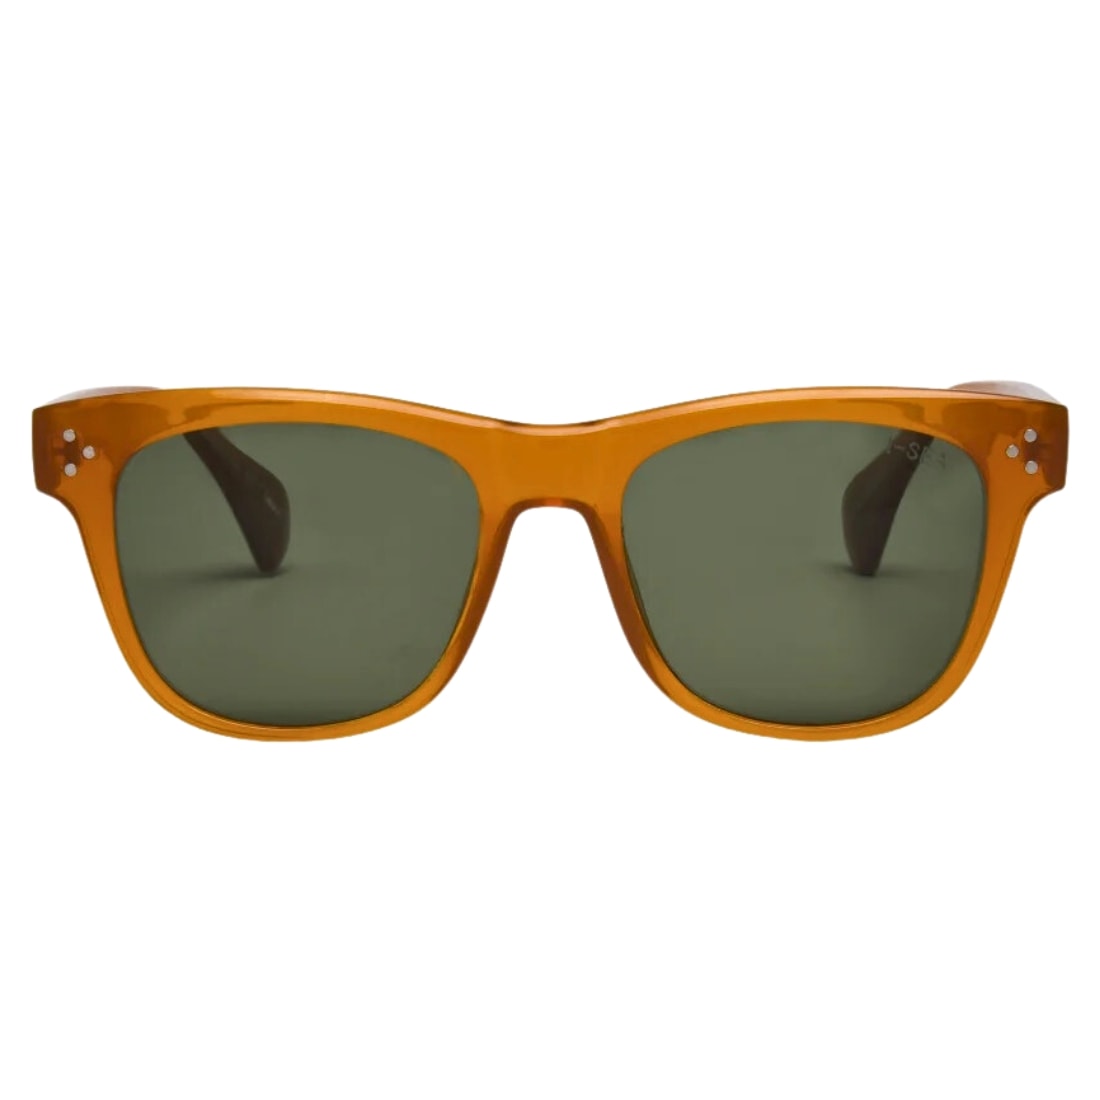 I-Sea Liam Polarised Sunglasses - Sunshine/Green Polarized Lens - Square/Rectangular Sunglasses by I-Sea